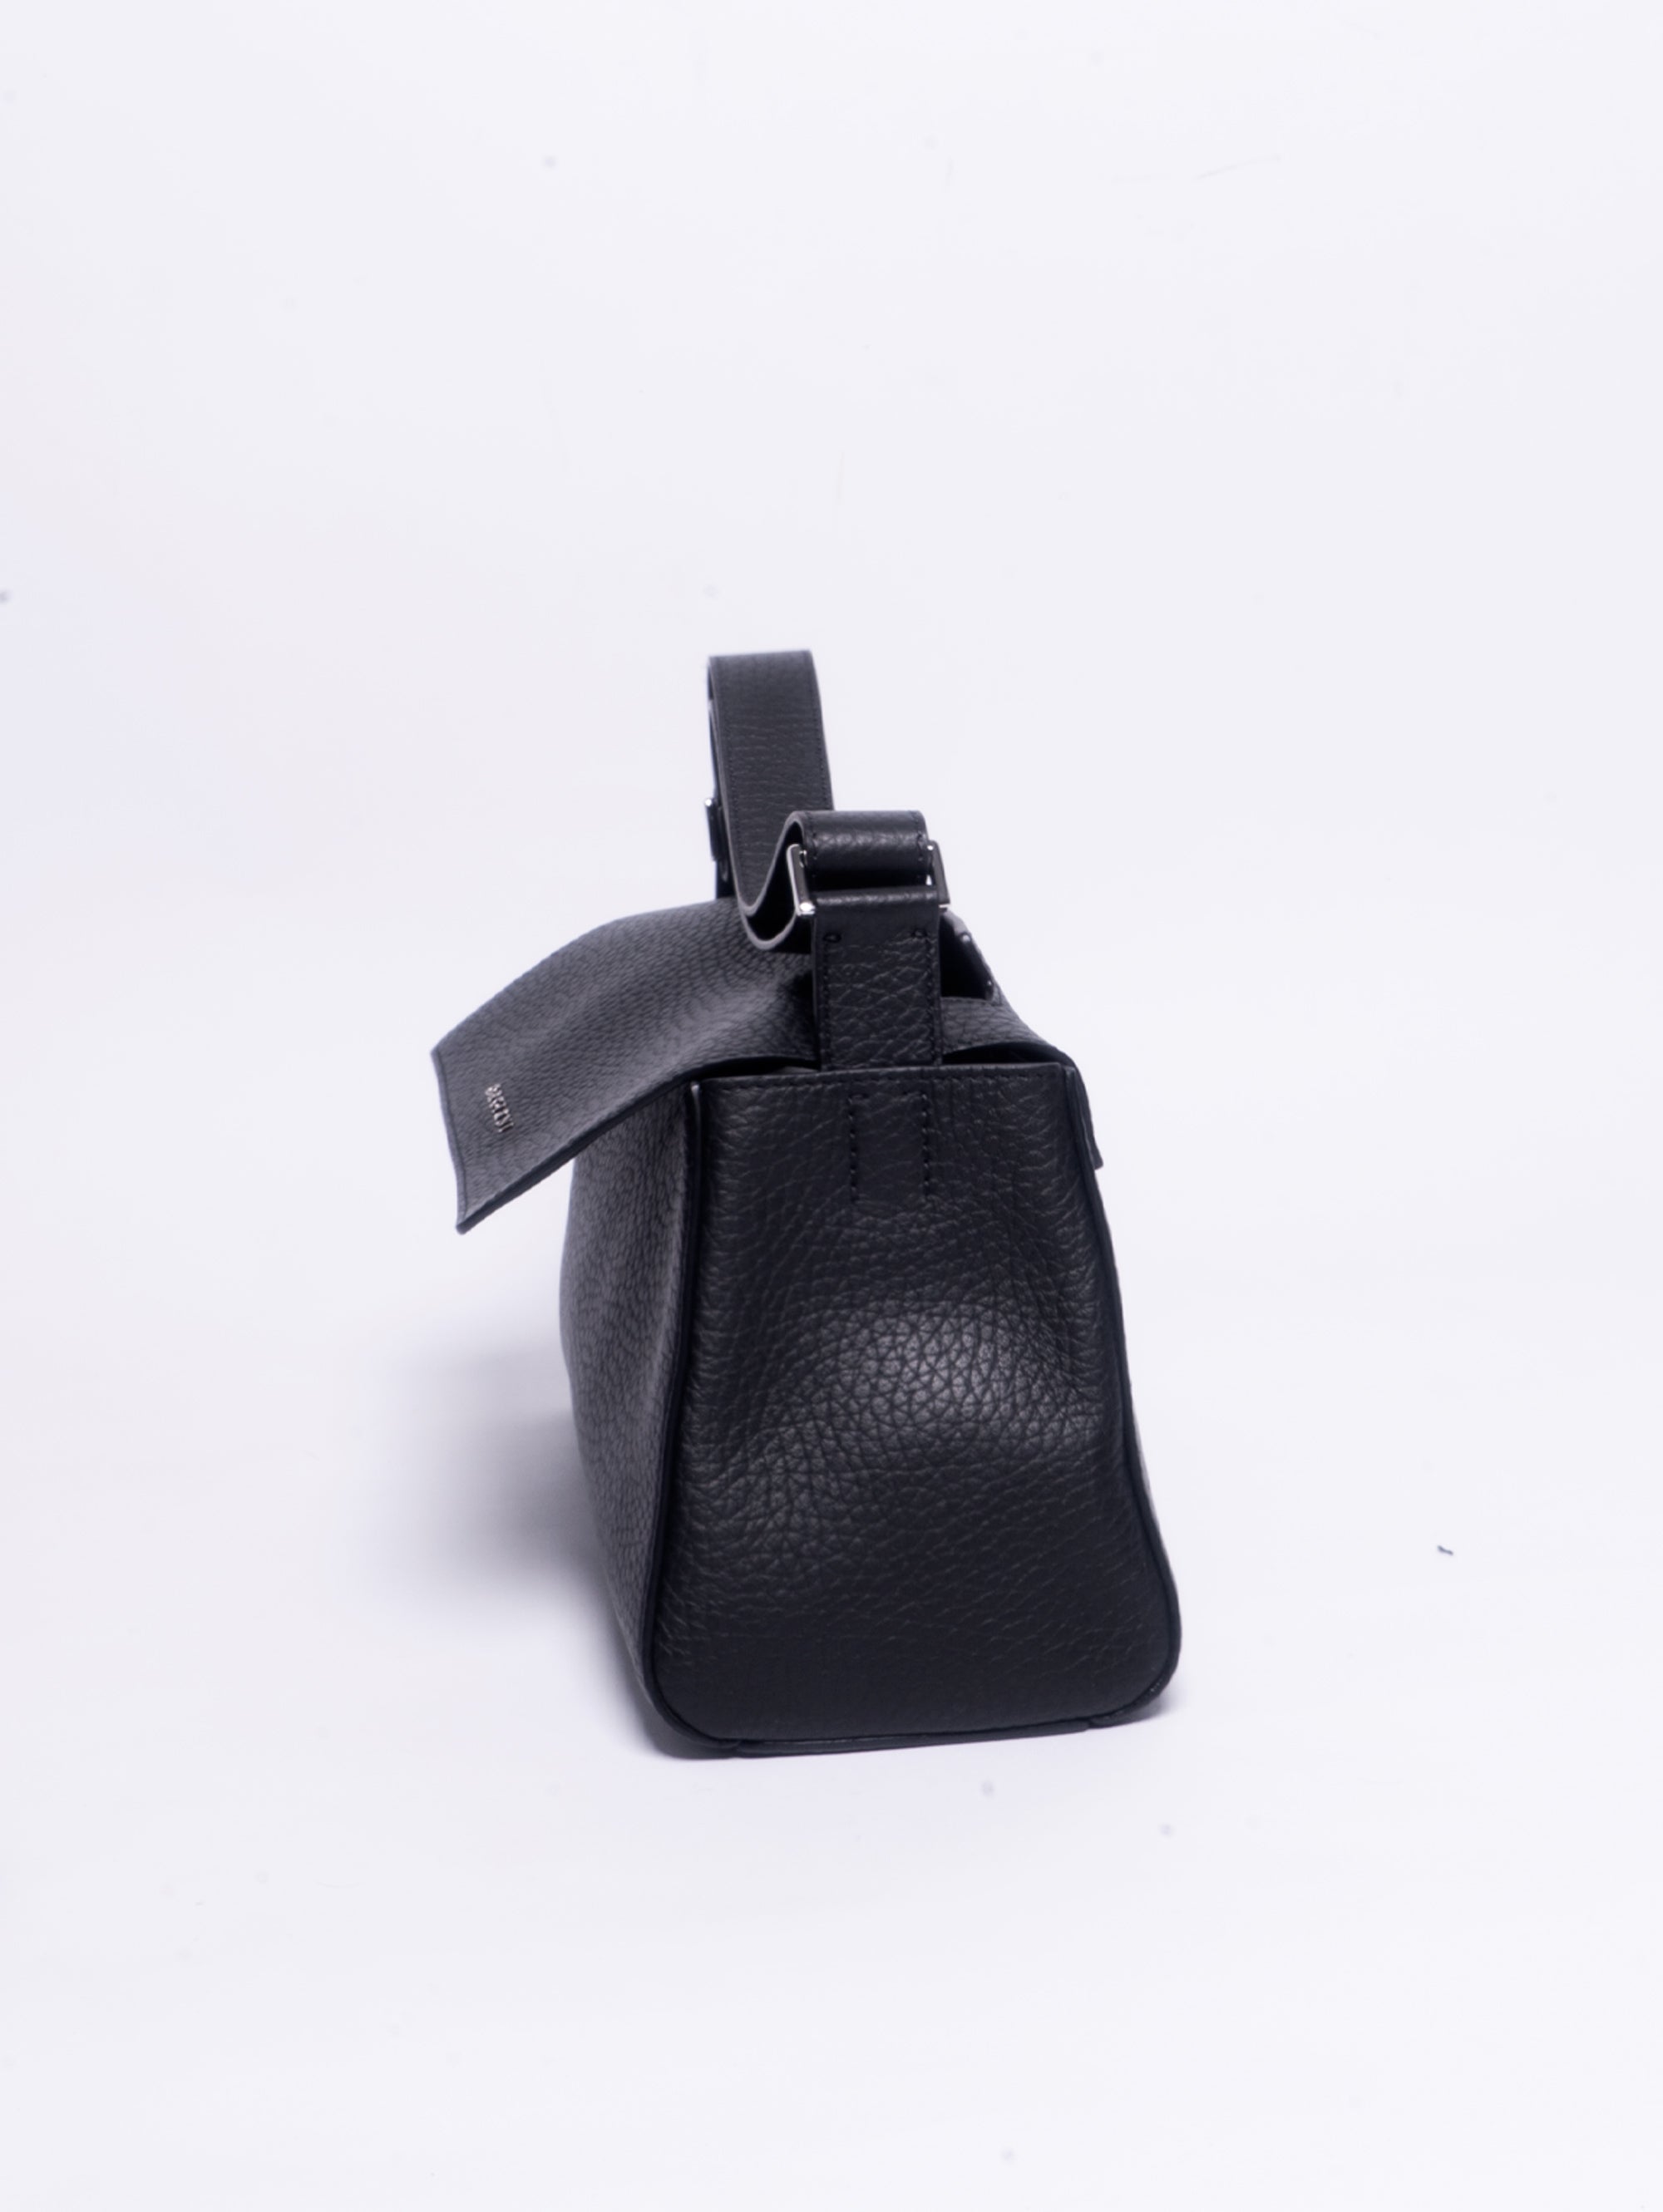 Sveva Baguette Bag with Black Shoulder Strap